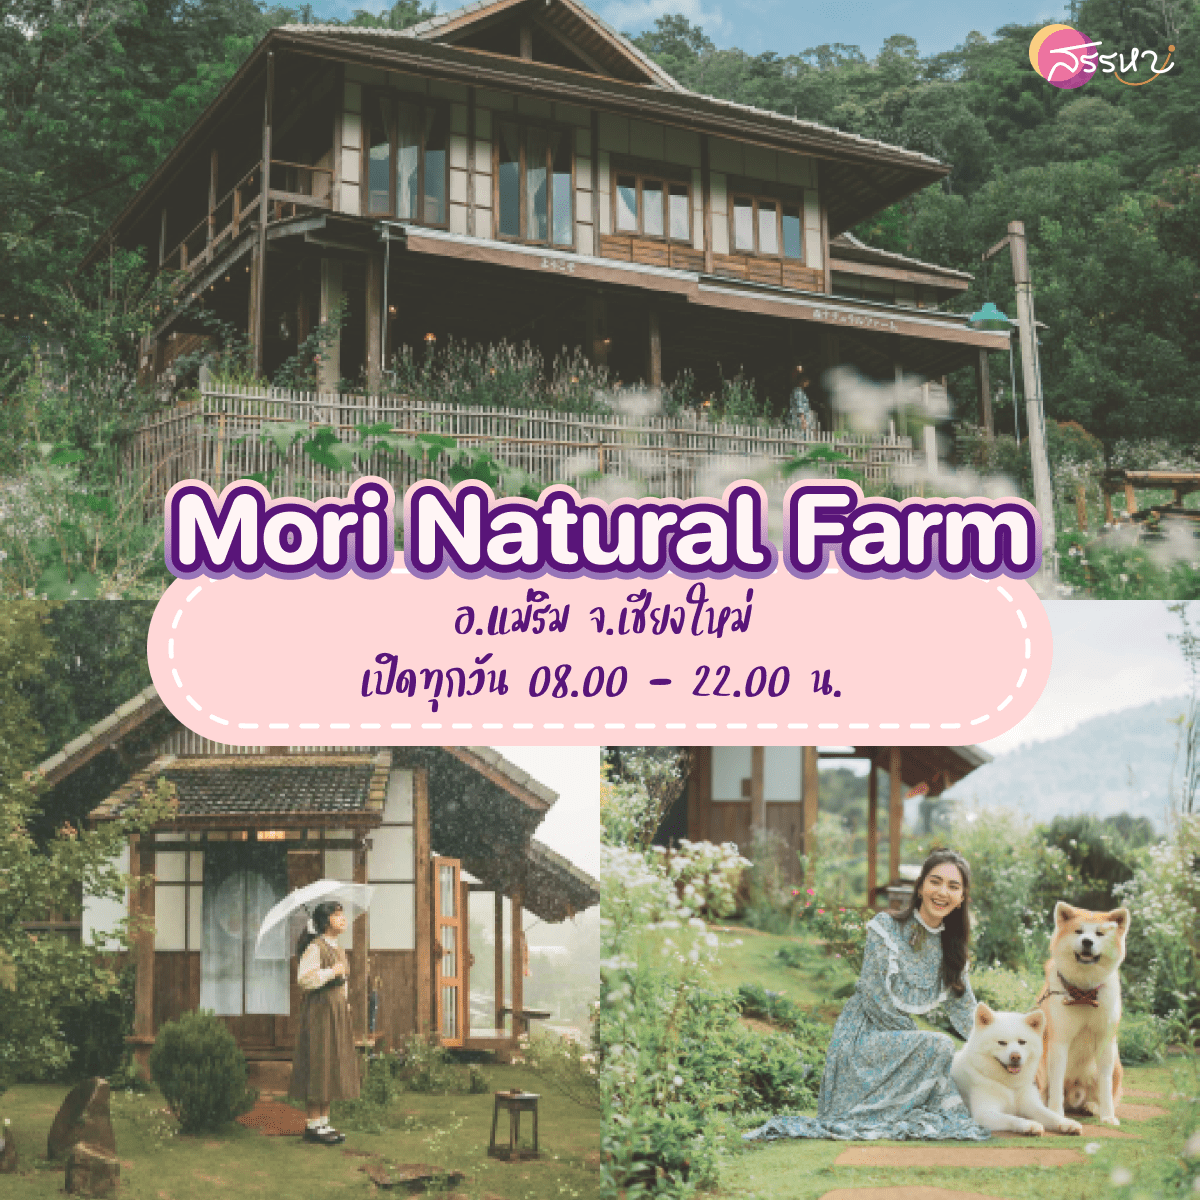 15 ที่เที่ยวเชียงใหม่ 2021-Mori Natural Farm 